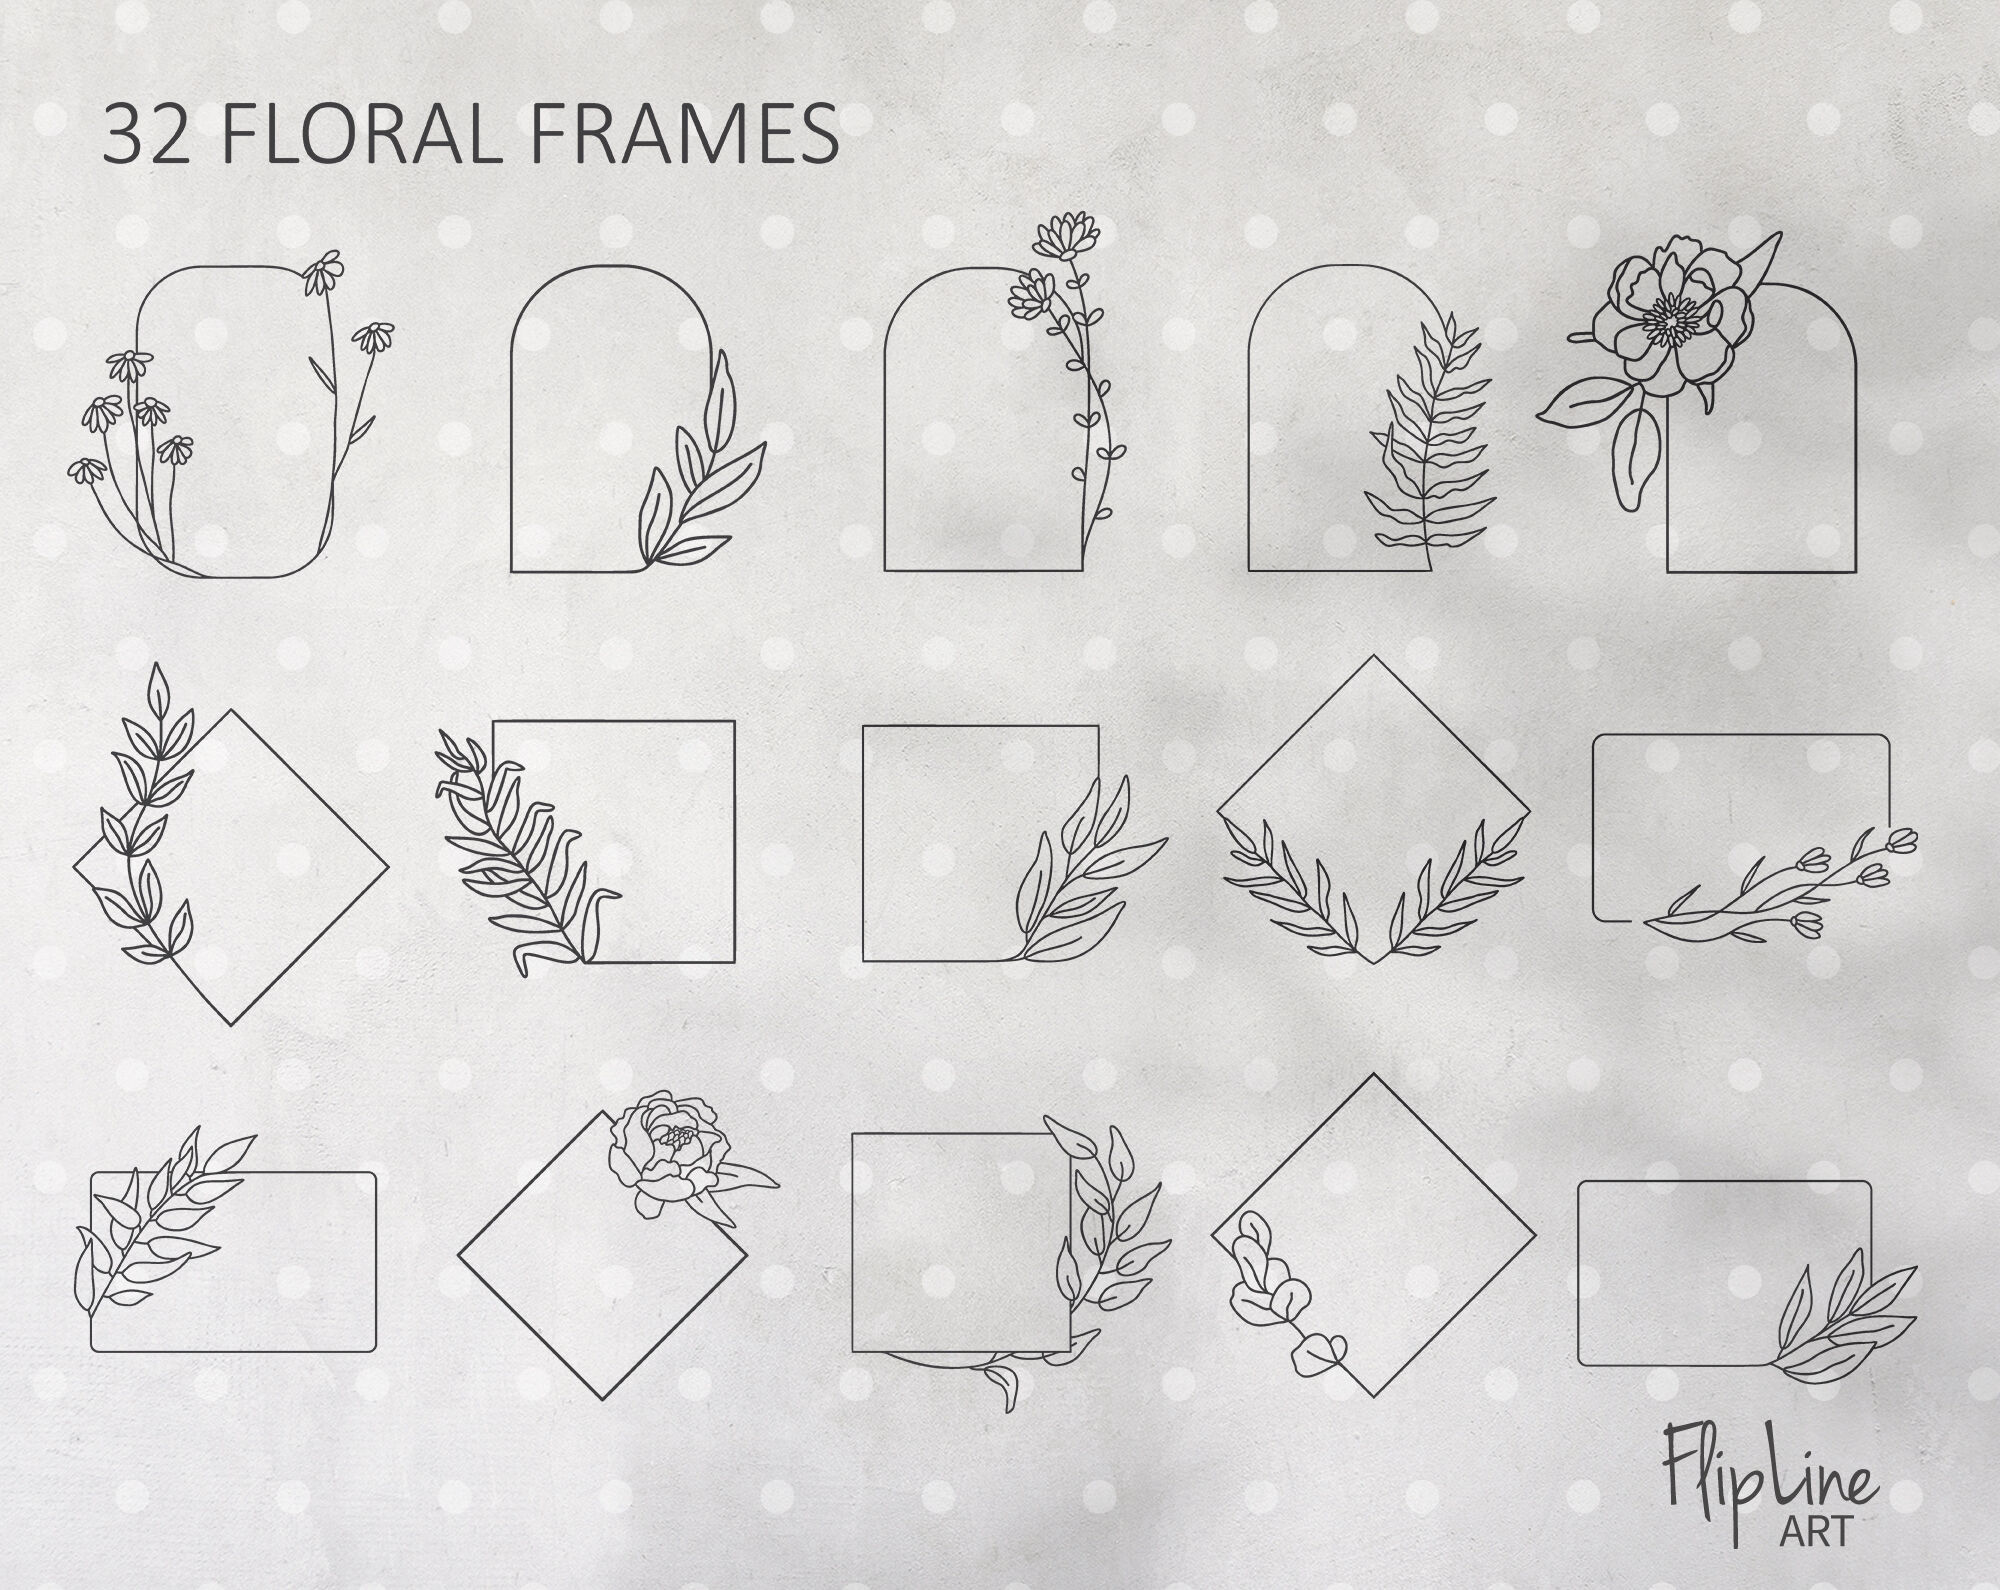 Flower Border SVG, Flower Monogram Frame SVG, Rose Border SVG, Split  Monogram Frame SVG, Floral Monogram Frame SVG, Floral Border SVG File,  Wedding